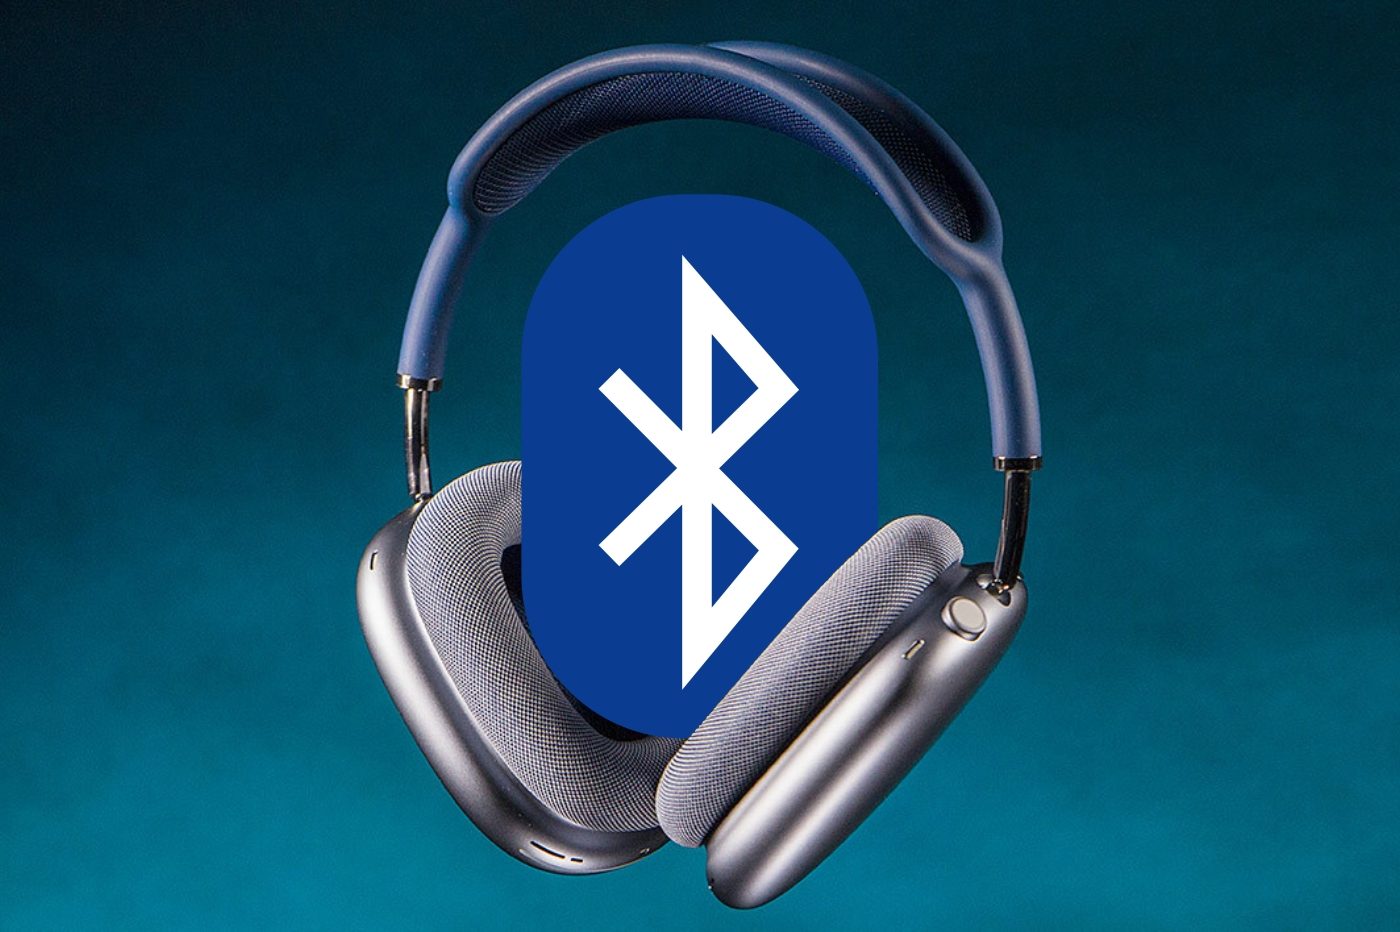 https://www.01net.com/app/uploads/2019/12/AirPods-Max-Bluetooth.jpg